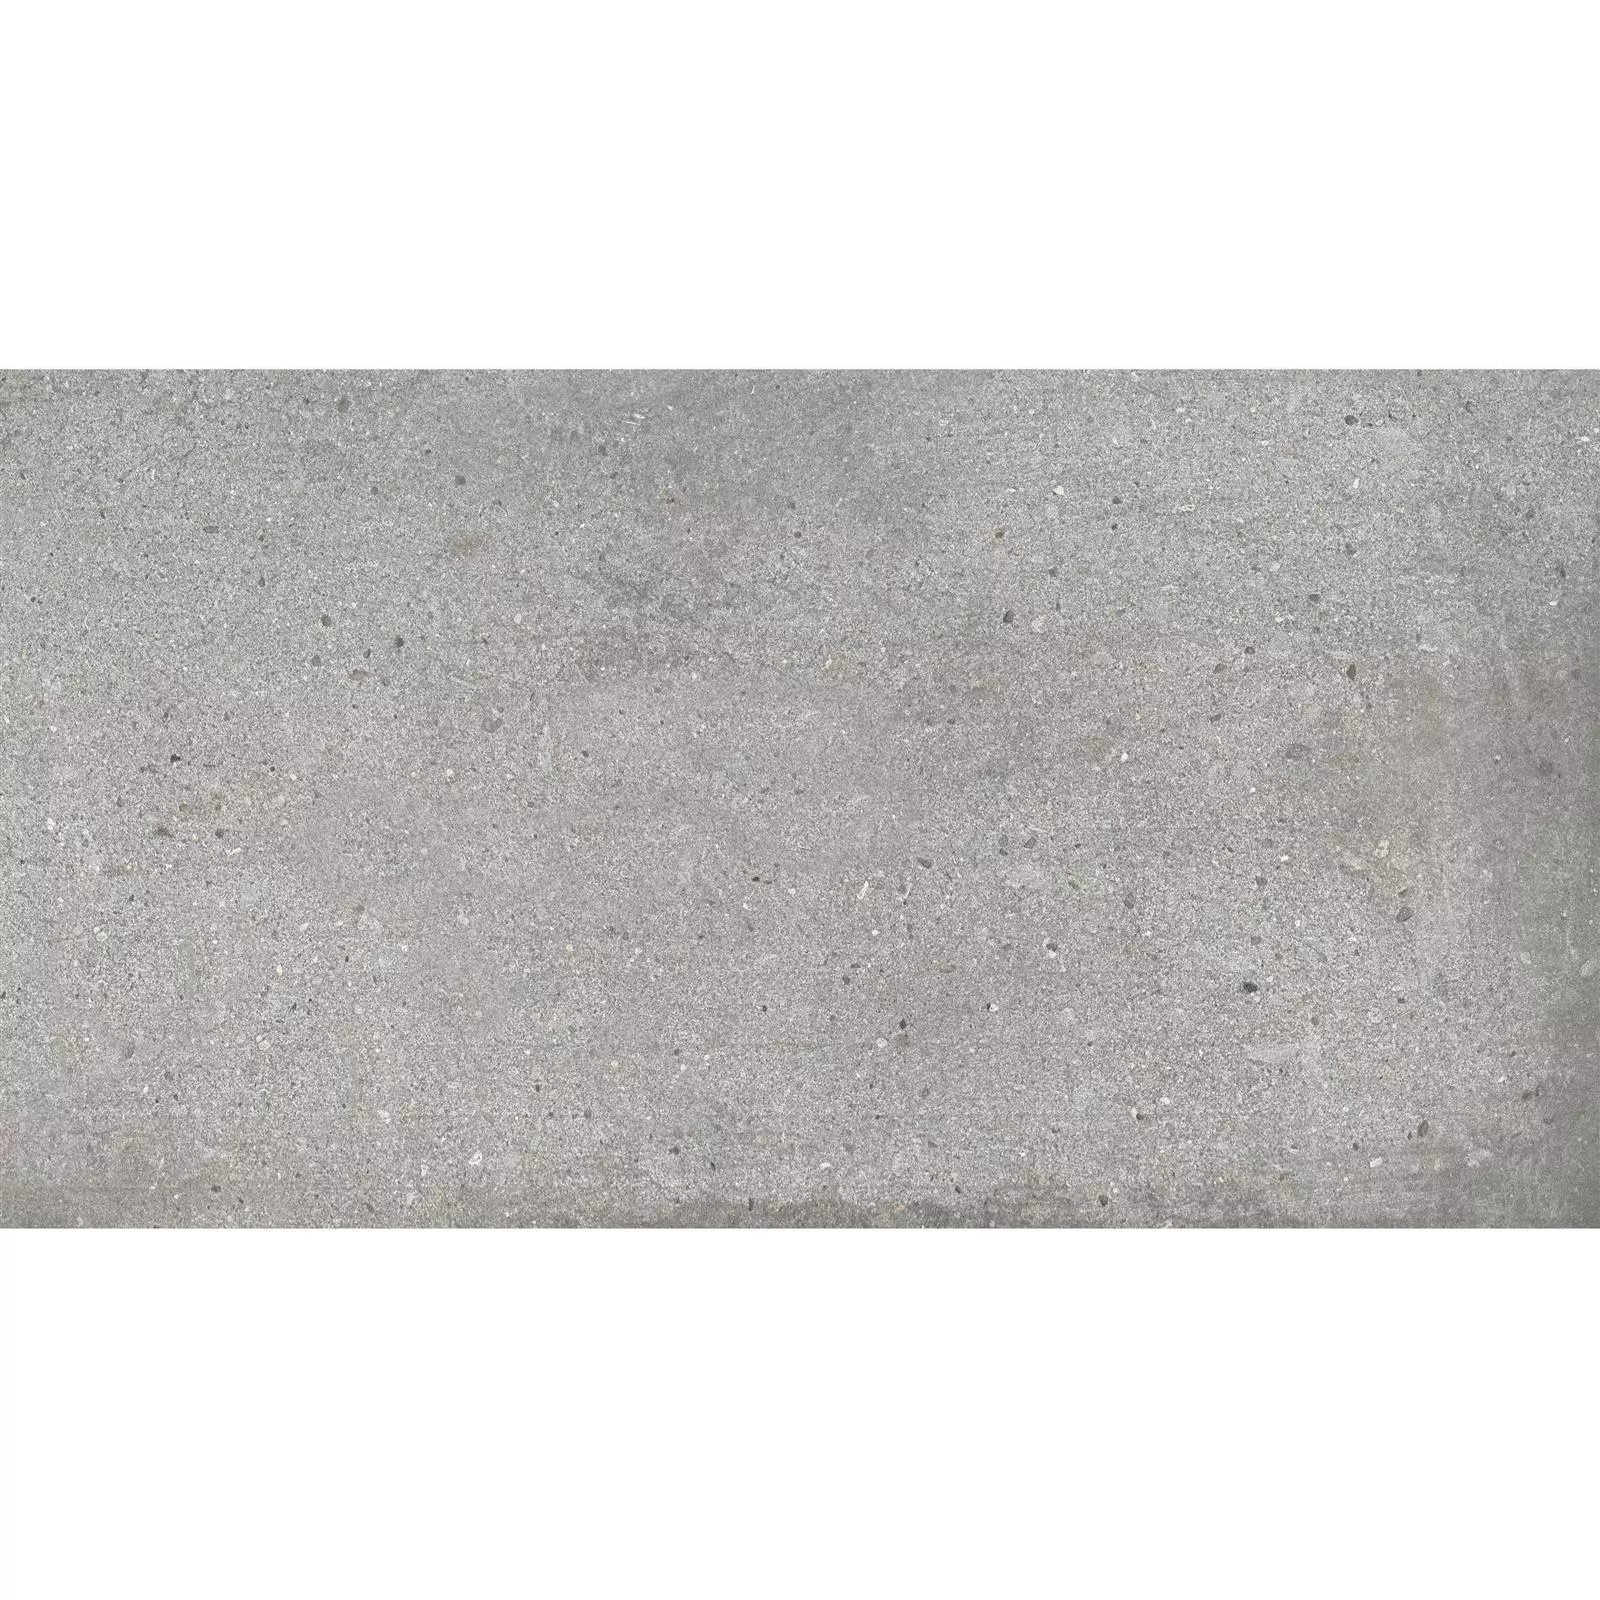 Πλακάκια Δαπέδου Freeland Πέτρινη Όψη R10/B Γκρί 30x60cm